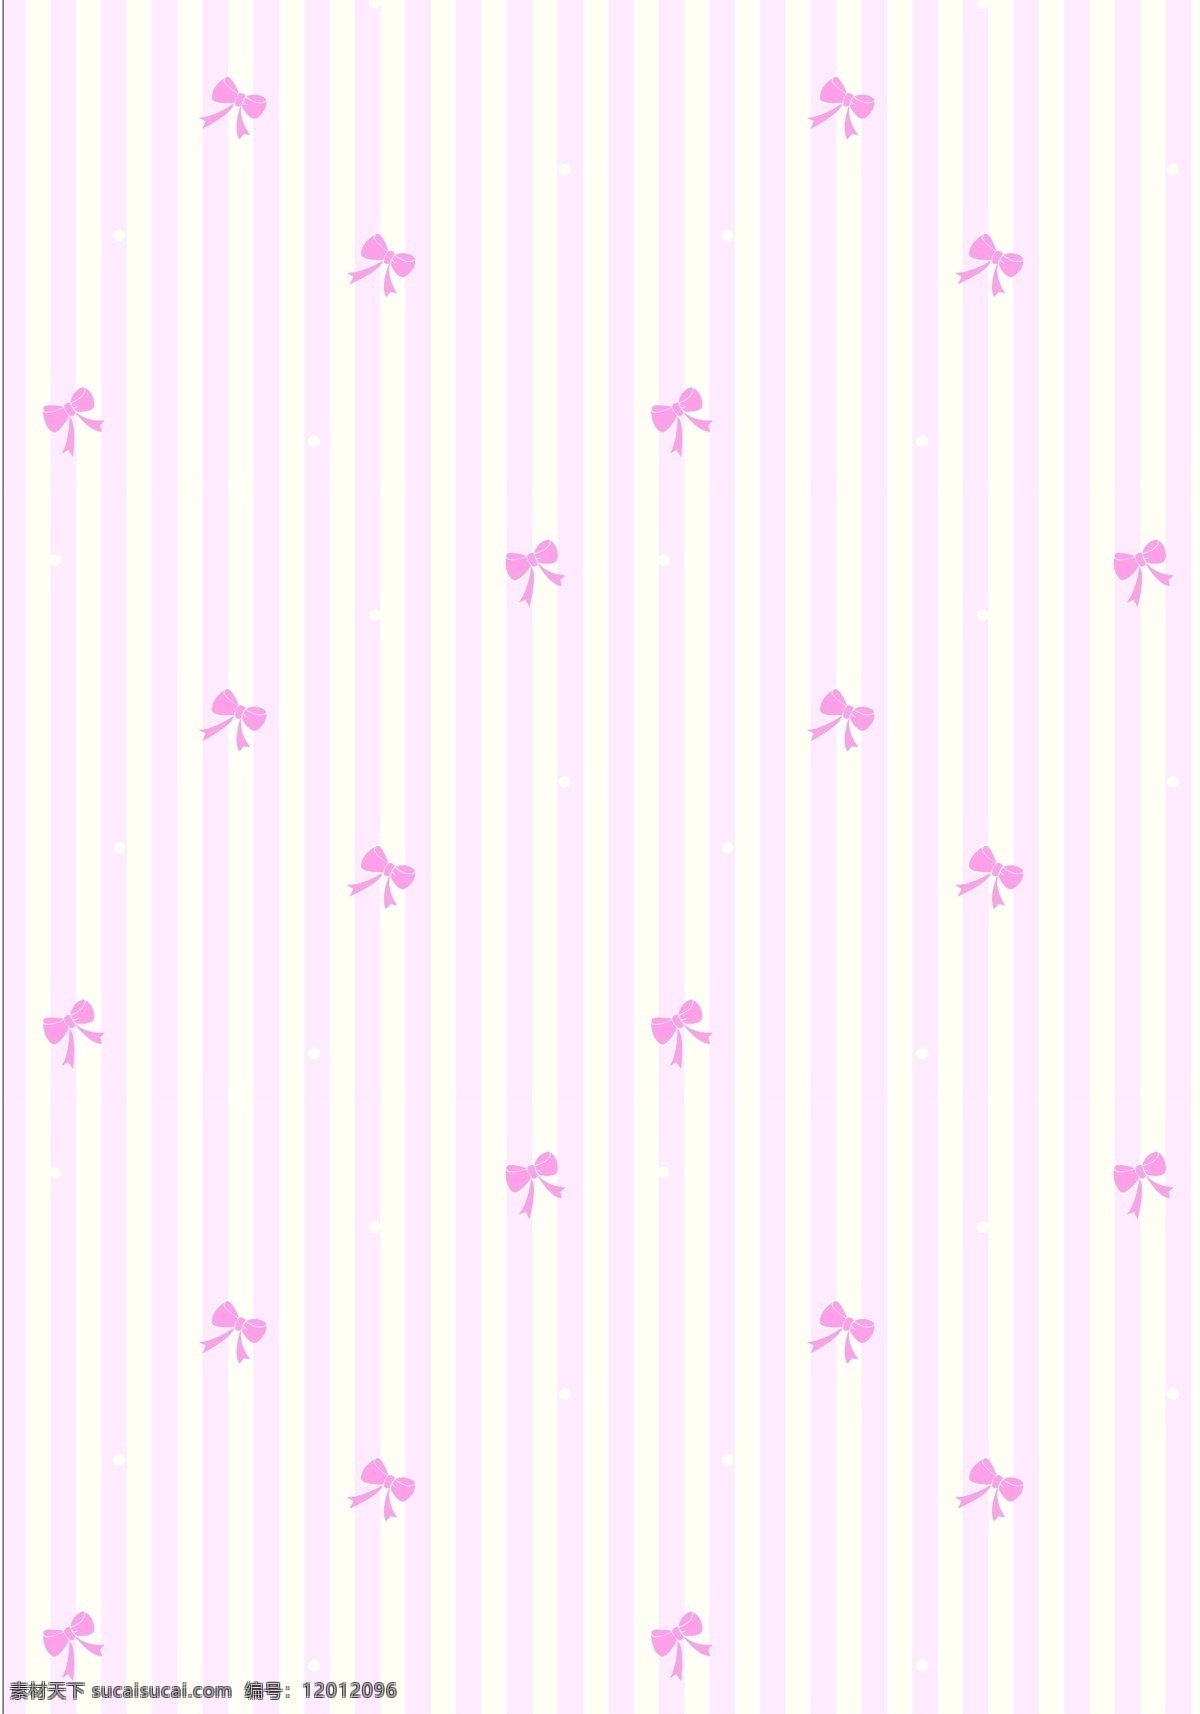 可爱 蝴蝶结 矢量 背景 粉色 矢量图 其他矢量图